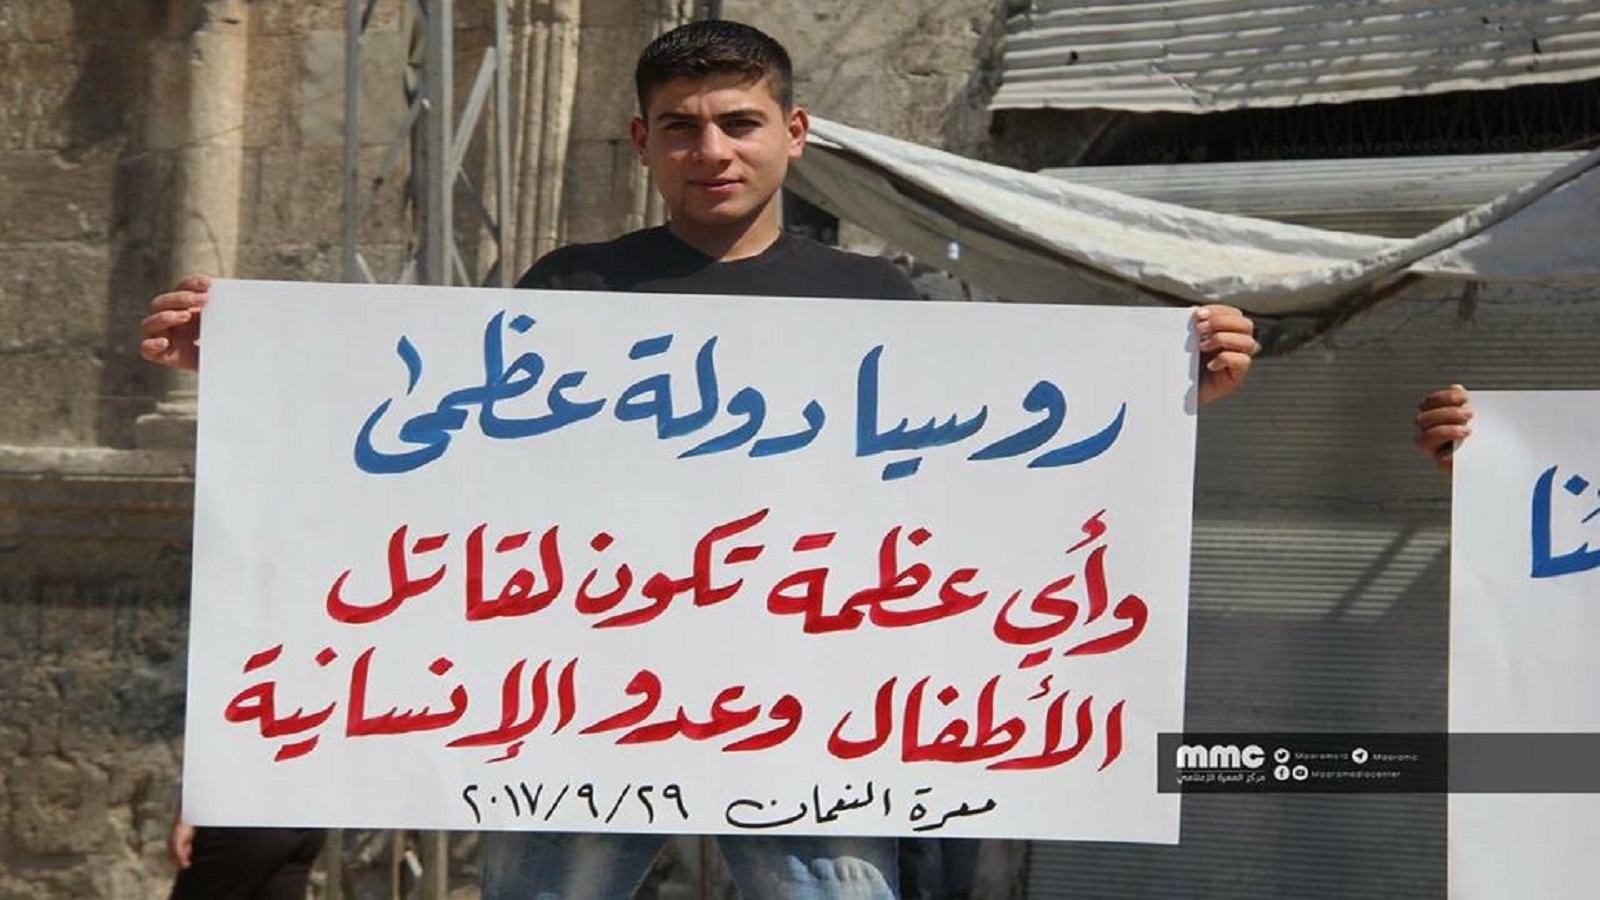 #روسيا_ضامن_الموت:السوريون ينددون بـ"الاحتلال الروسي"